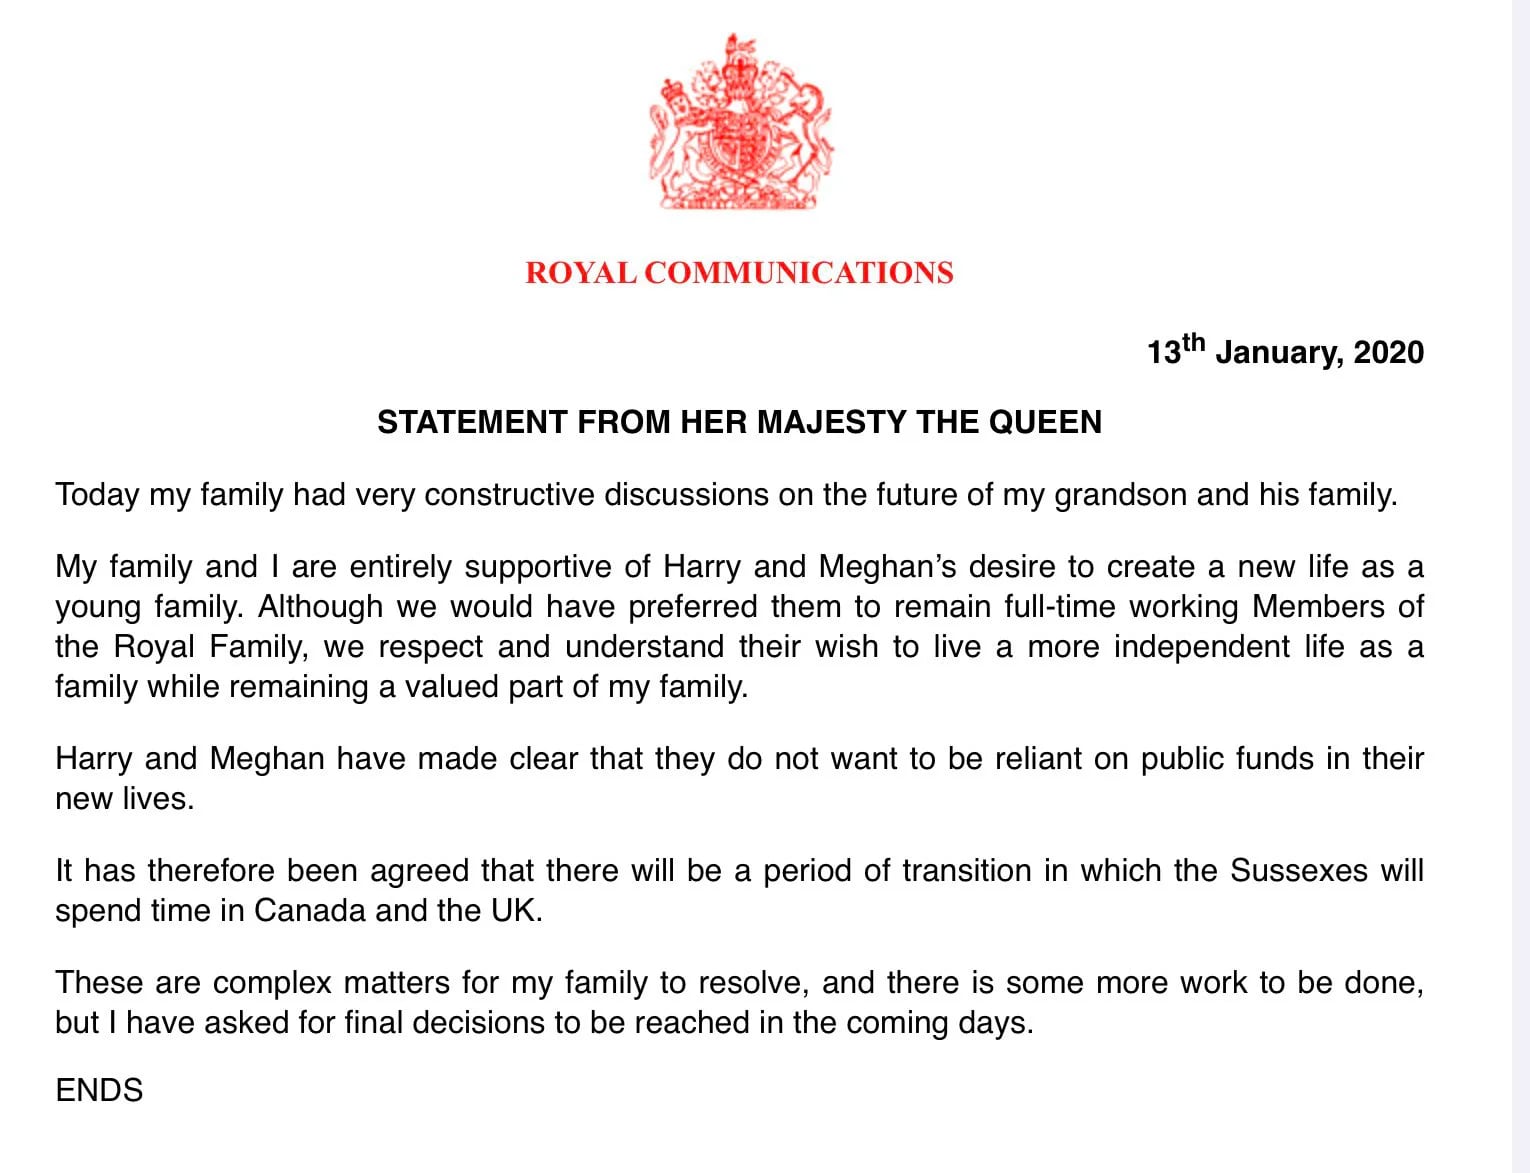 El comunicado del Palacio de Buckingham sobre la decisión de Harry y Meghan de renunciar a sus obligaciones como miembros de la realeza británica (Buckingham Palace)